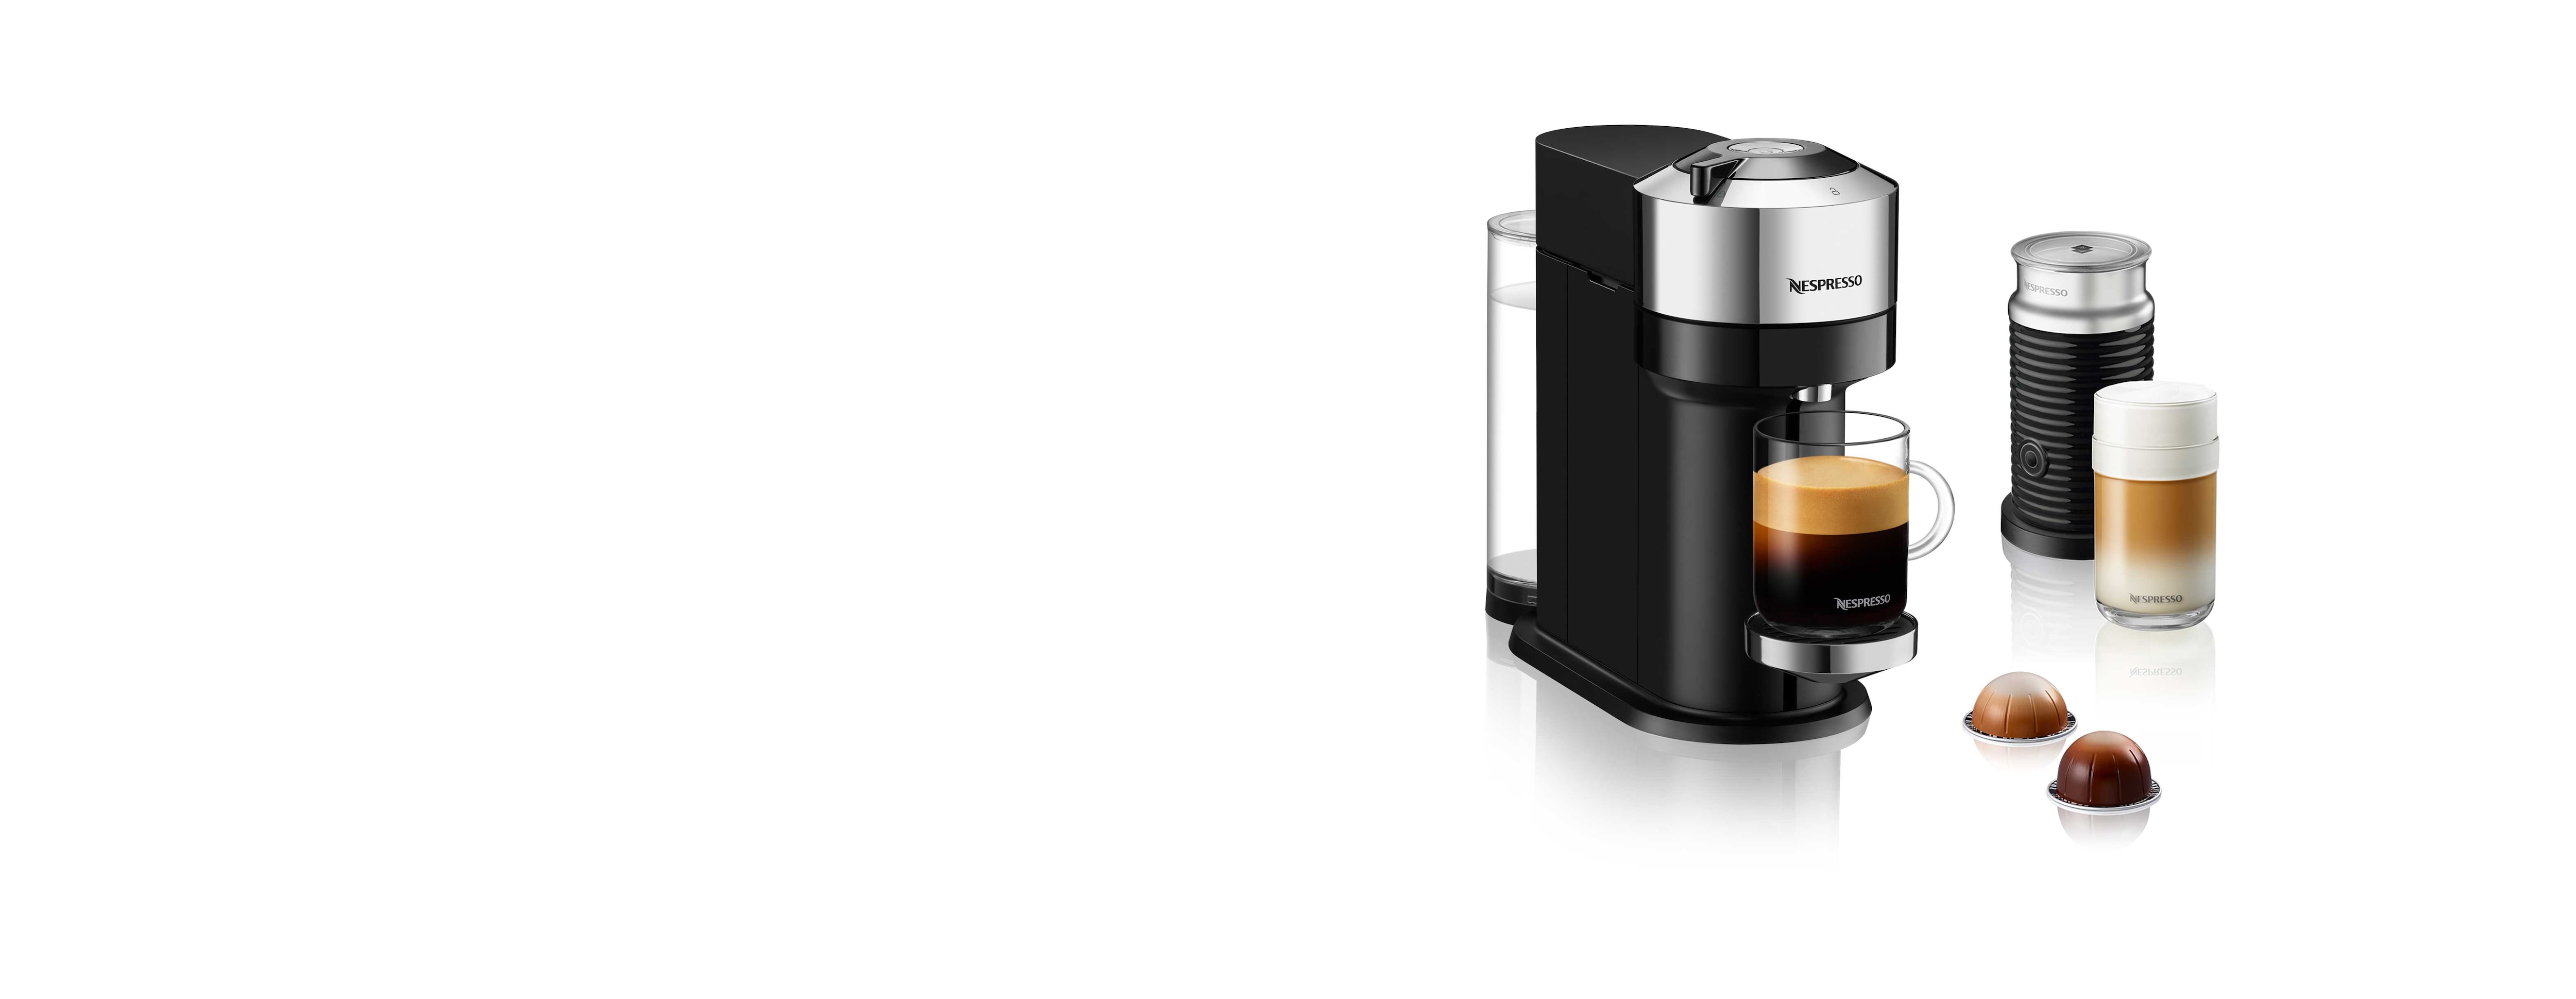 Manoeuvreren Toneelschrijver extract Vertuo Next Deluxe Chrome & Milk Frother Bundle | Vertuo Coffee Machine |  Nespresso USA